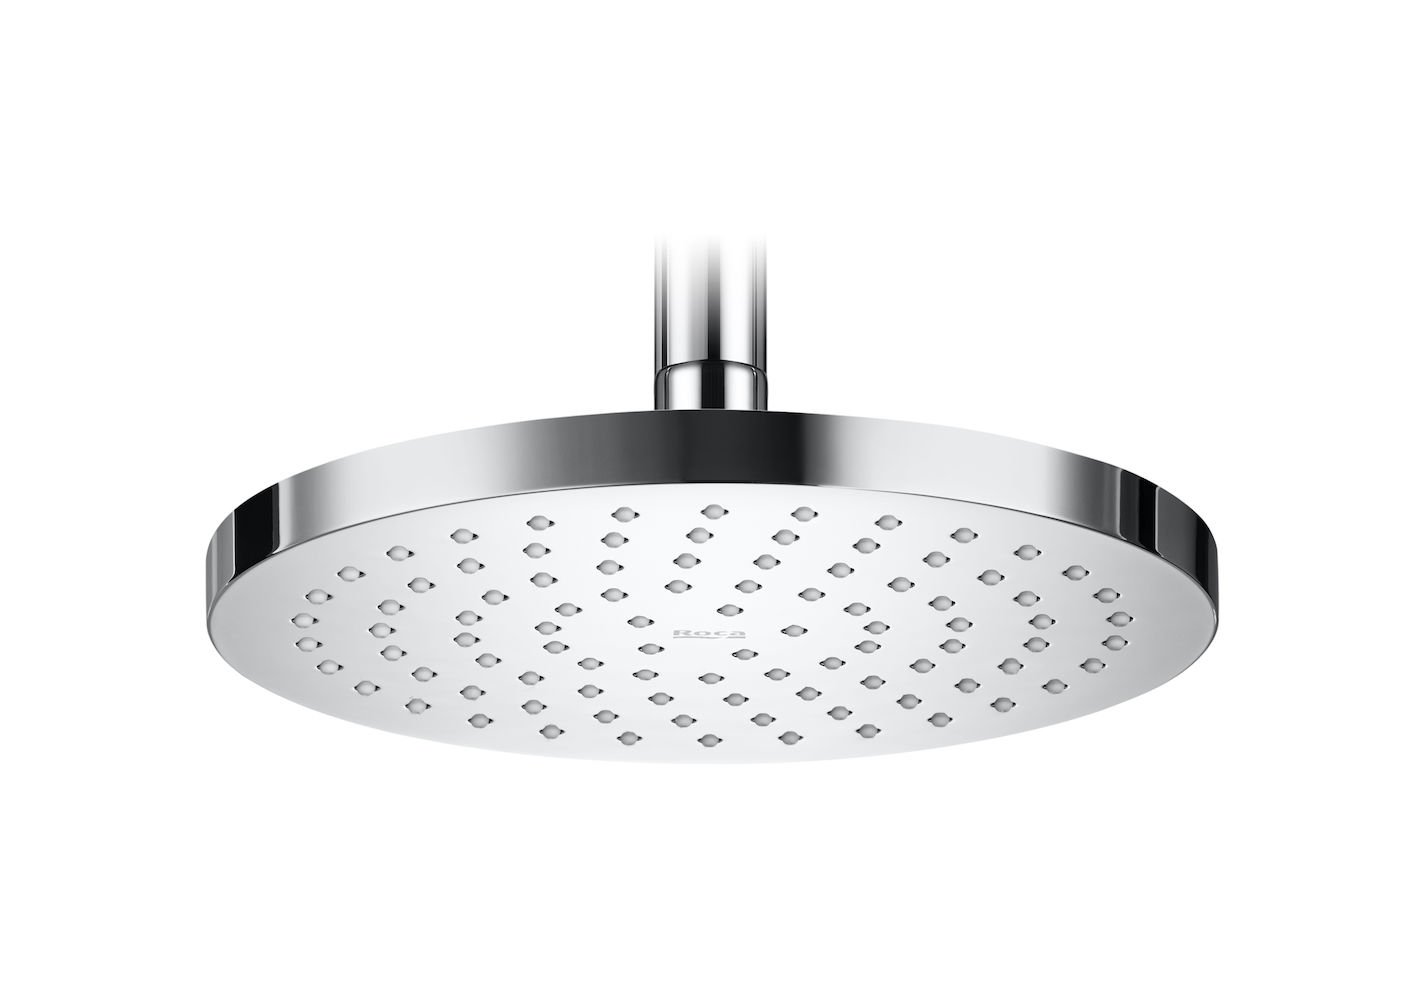 Rainsense square - hlavová sprcha, prům. 20 cm, ABS/chrom A5B2150C00